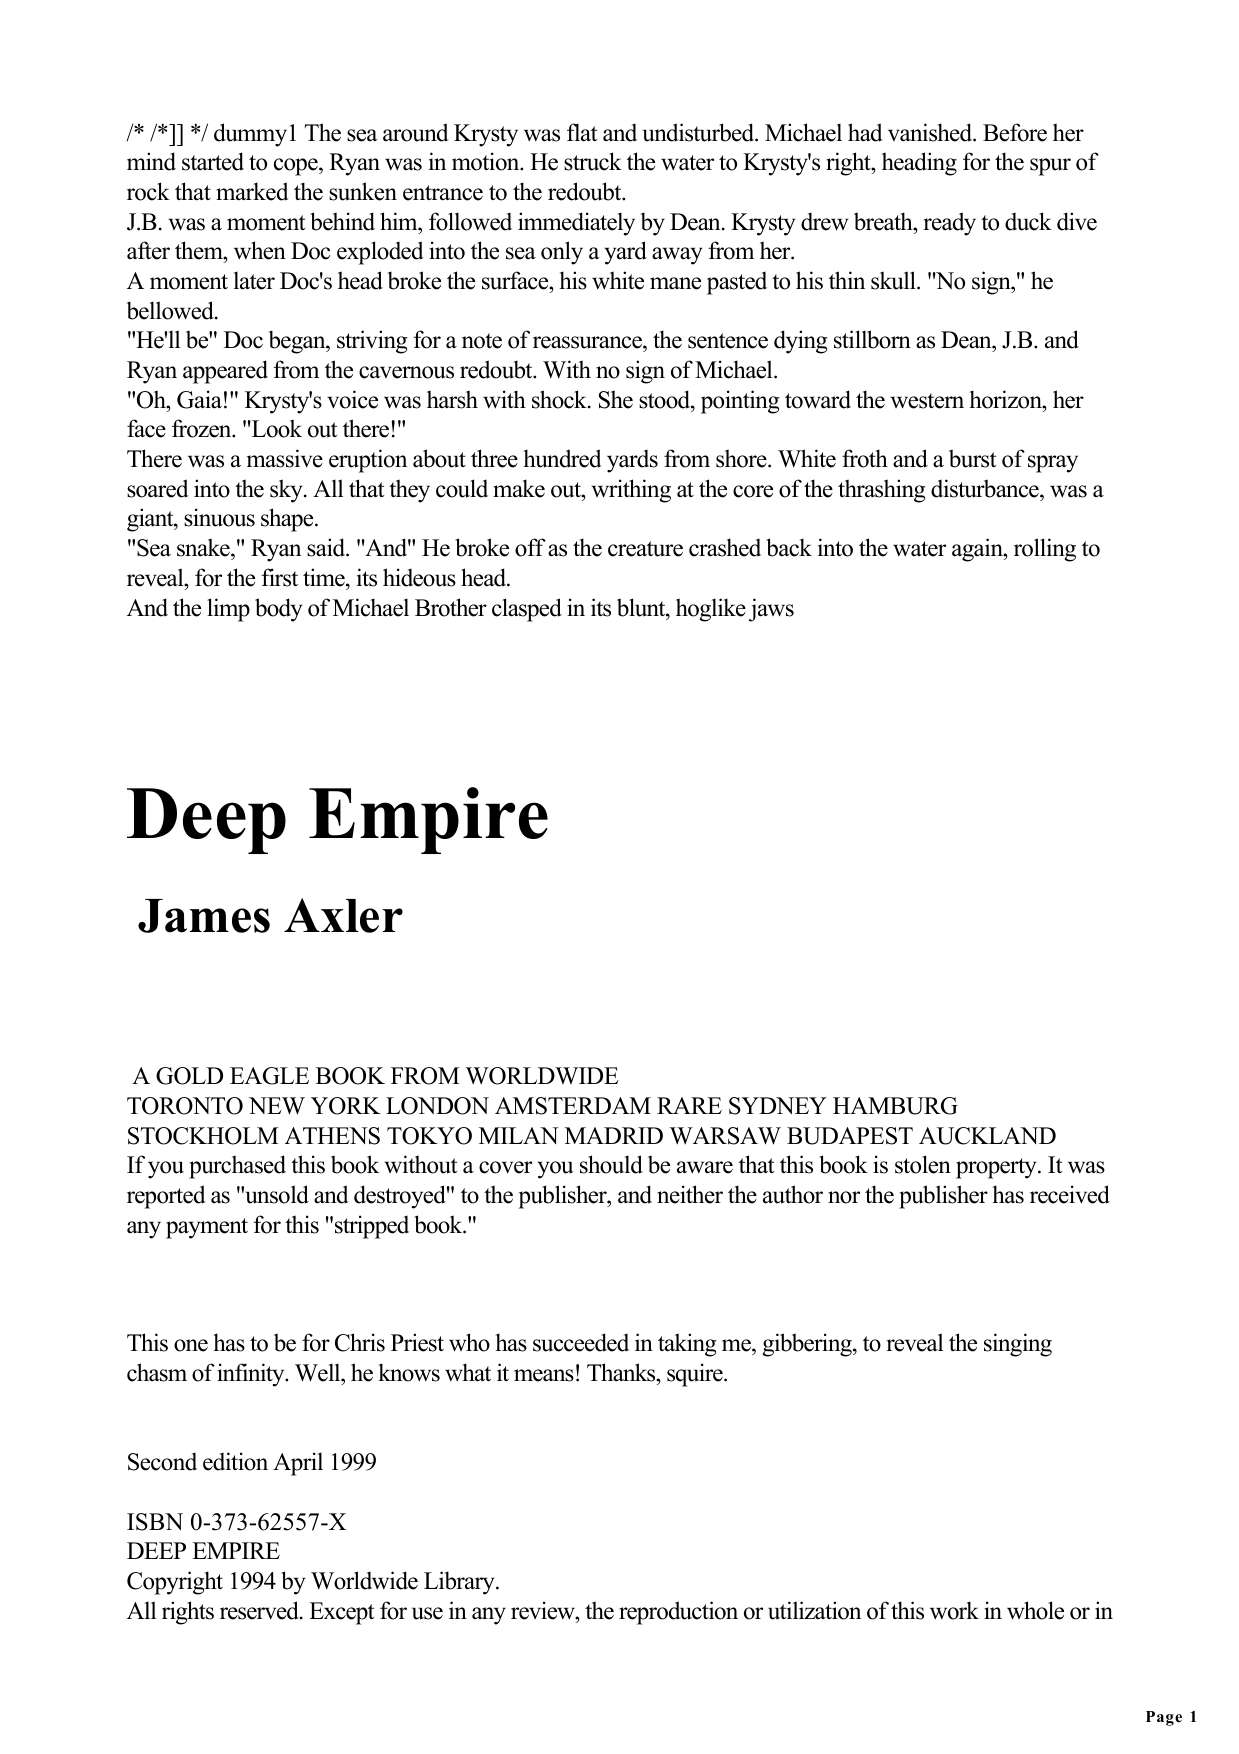 Deep Empire